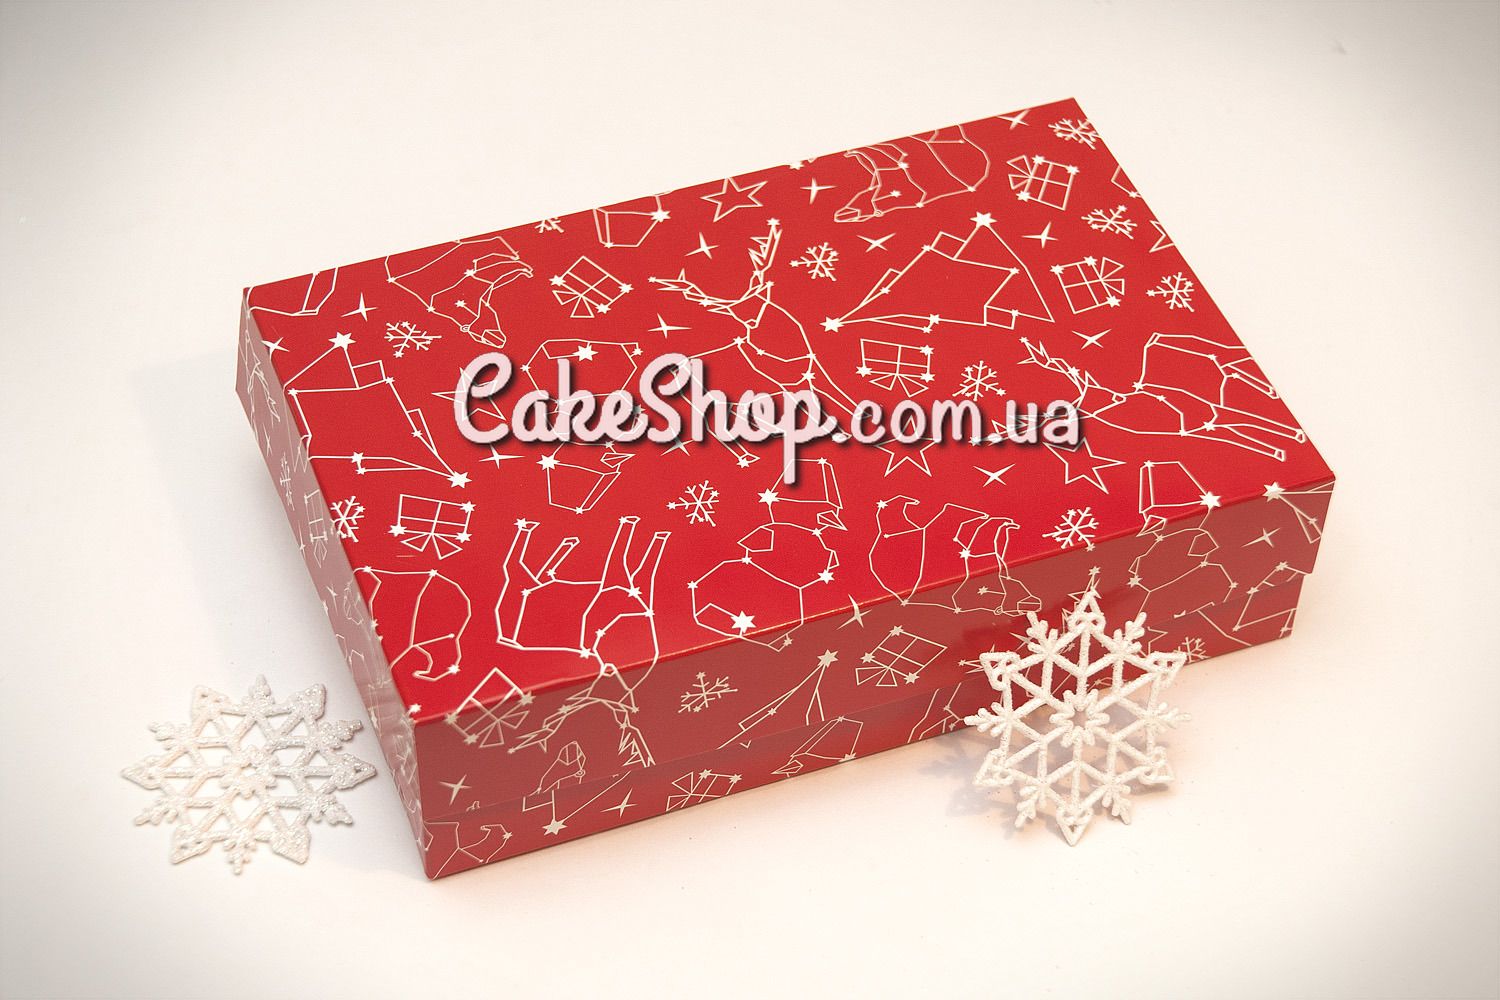 ⋗ Коробка для эклеров, зефира, печенья Новогодняя Красная, 23х15х6 см купить в Украине ➛ CakeShop.com.ua, фото